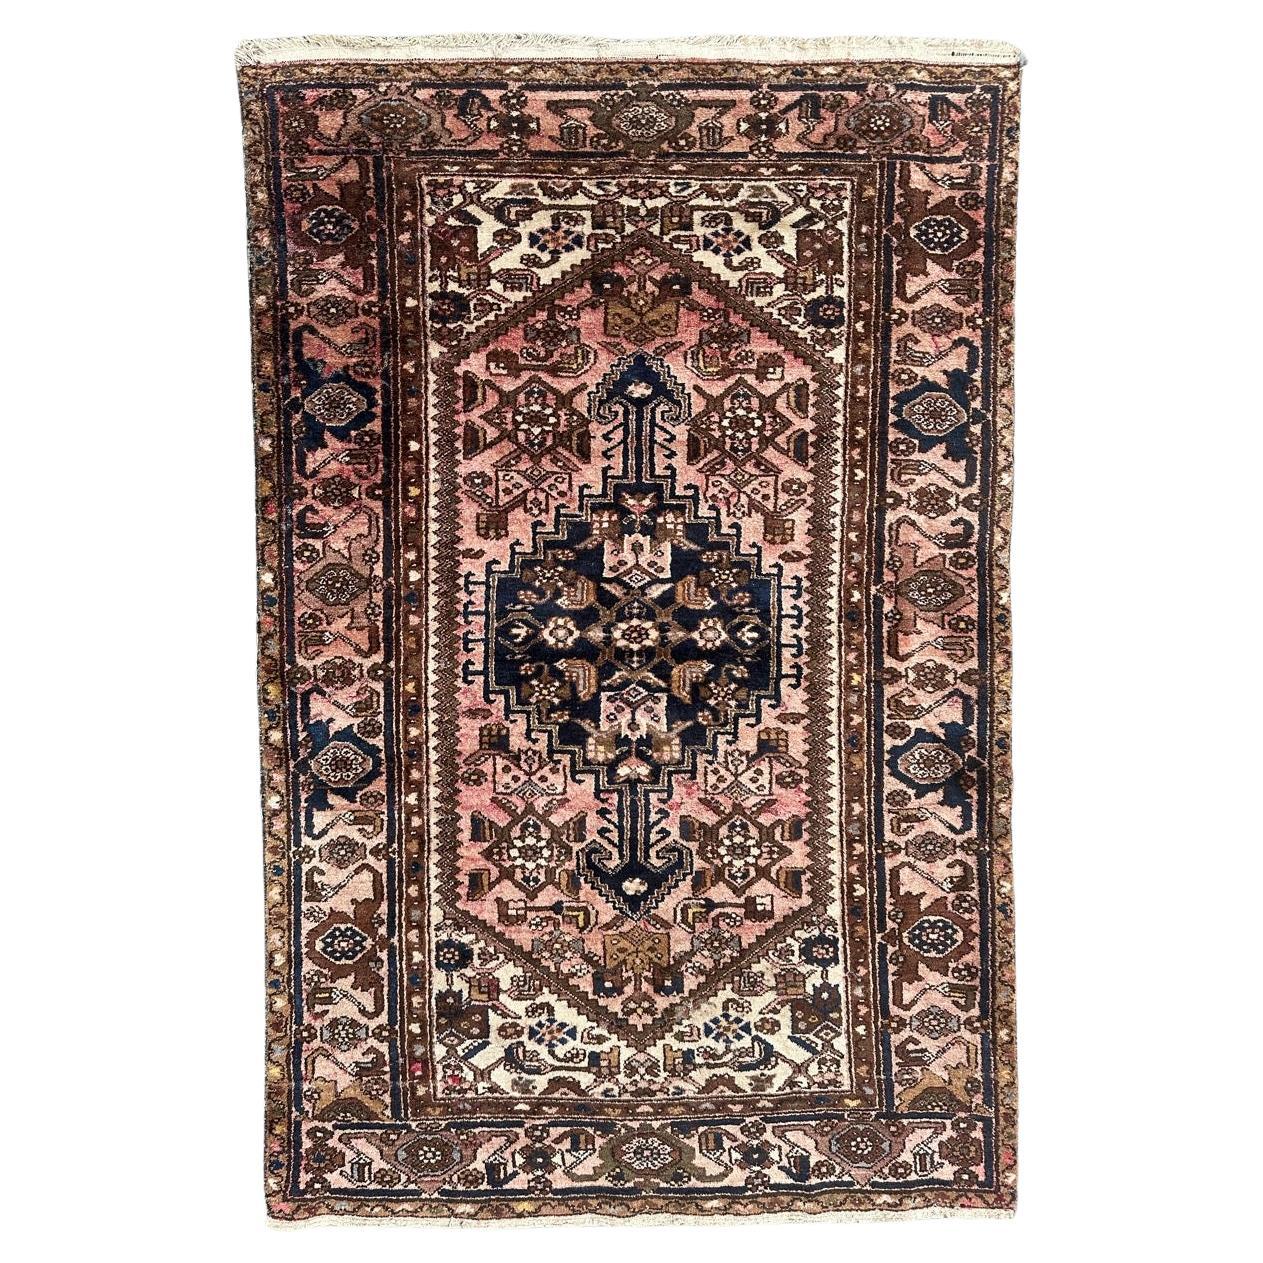 Bobyrug’s pretty vintage Hamadan rug For Sale